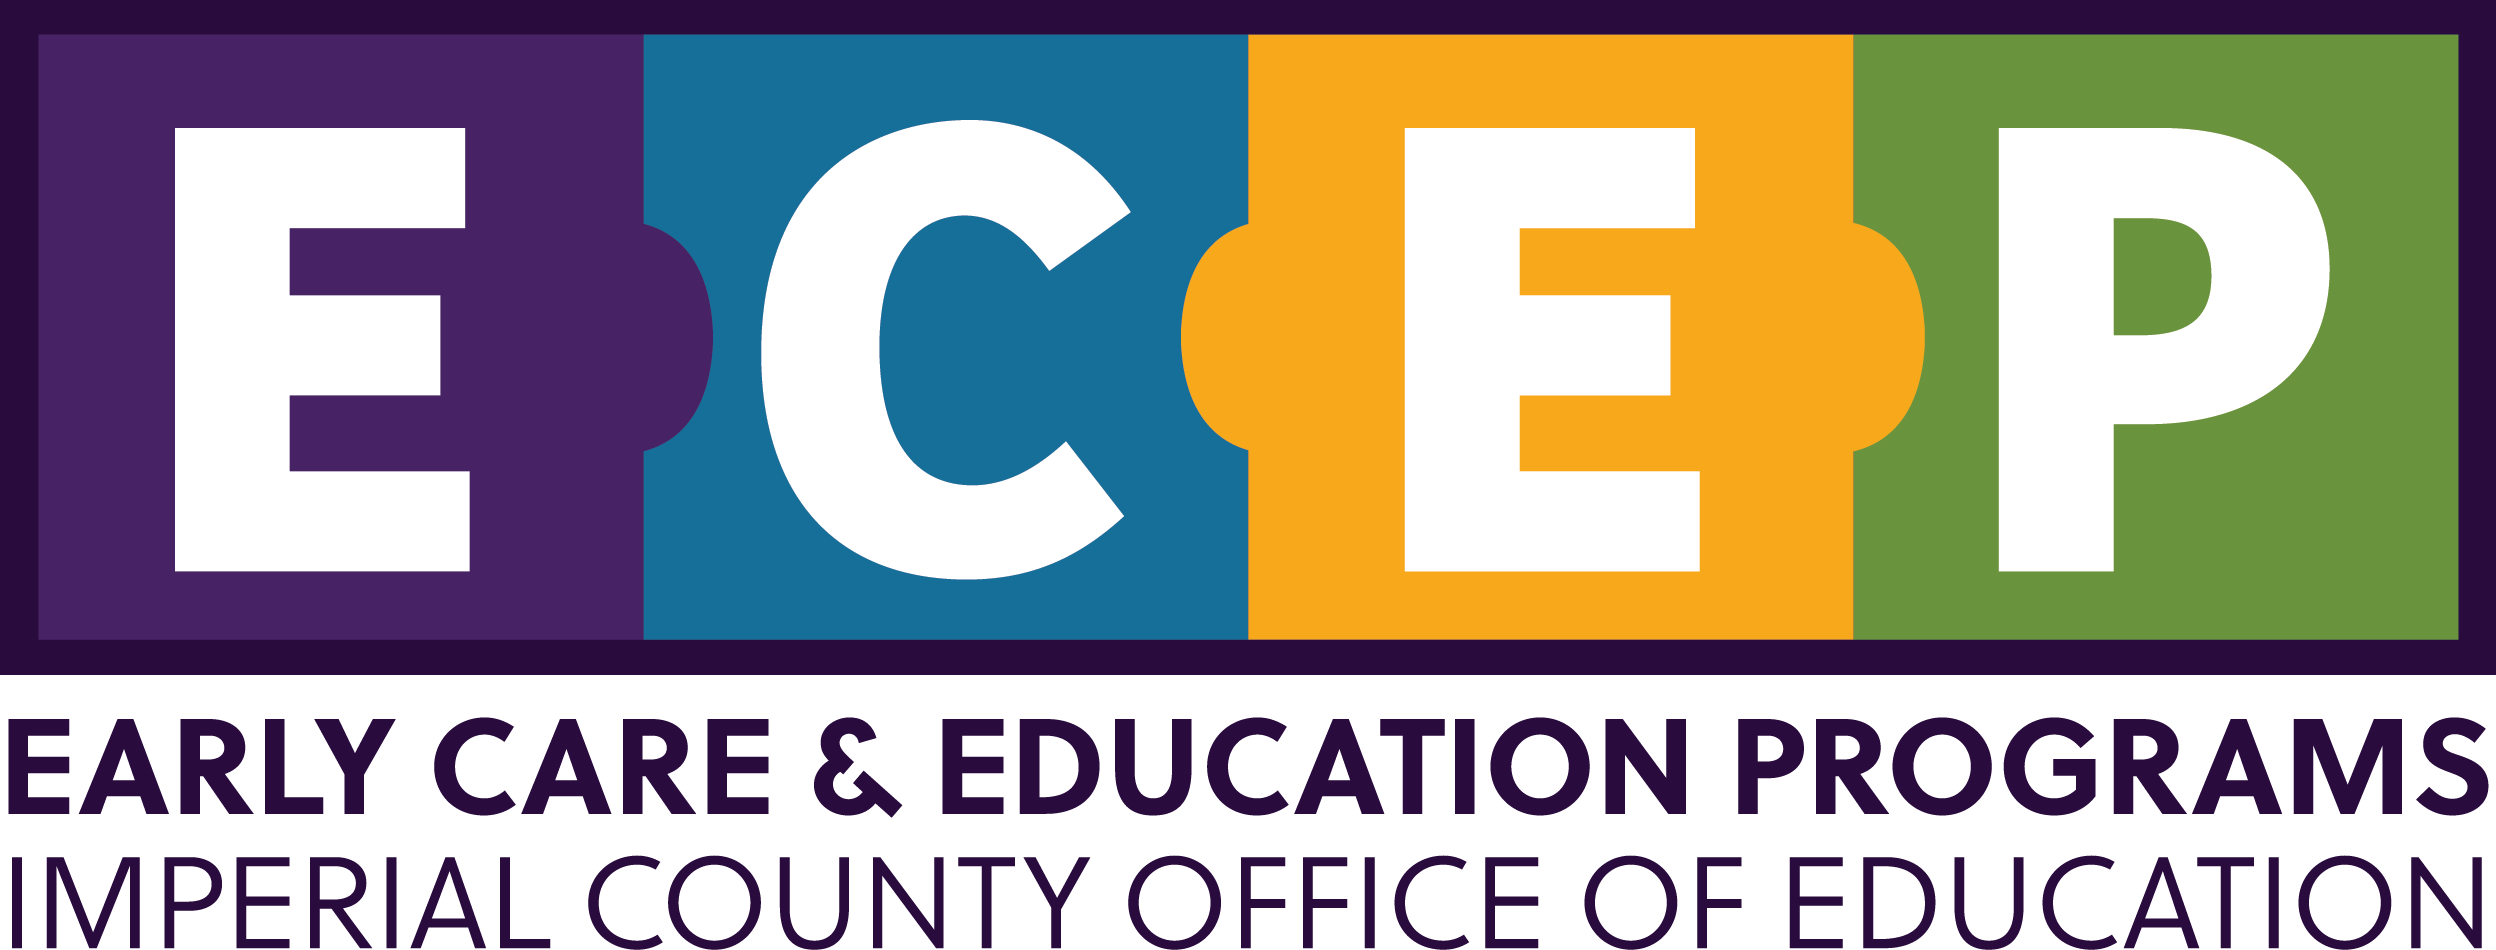 ECEP logo